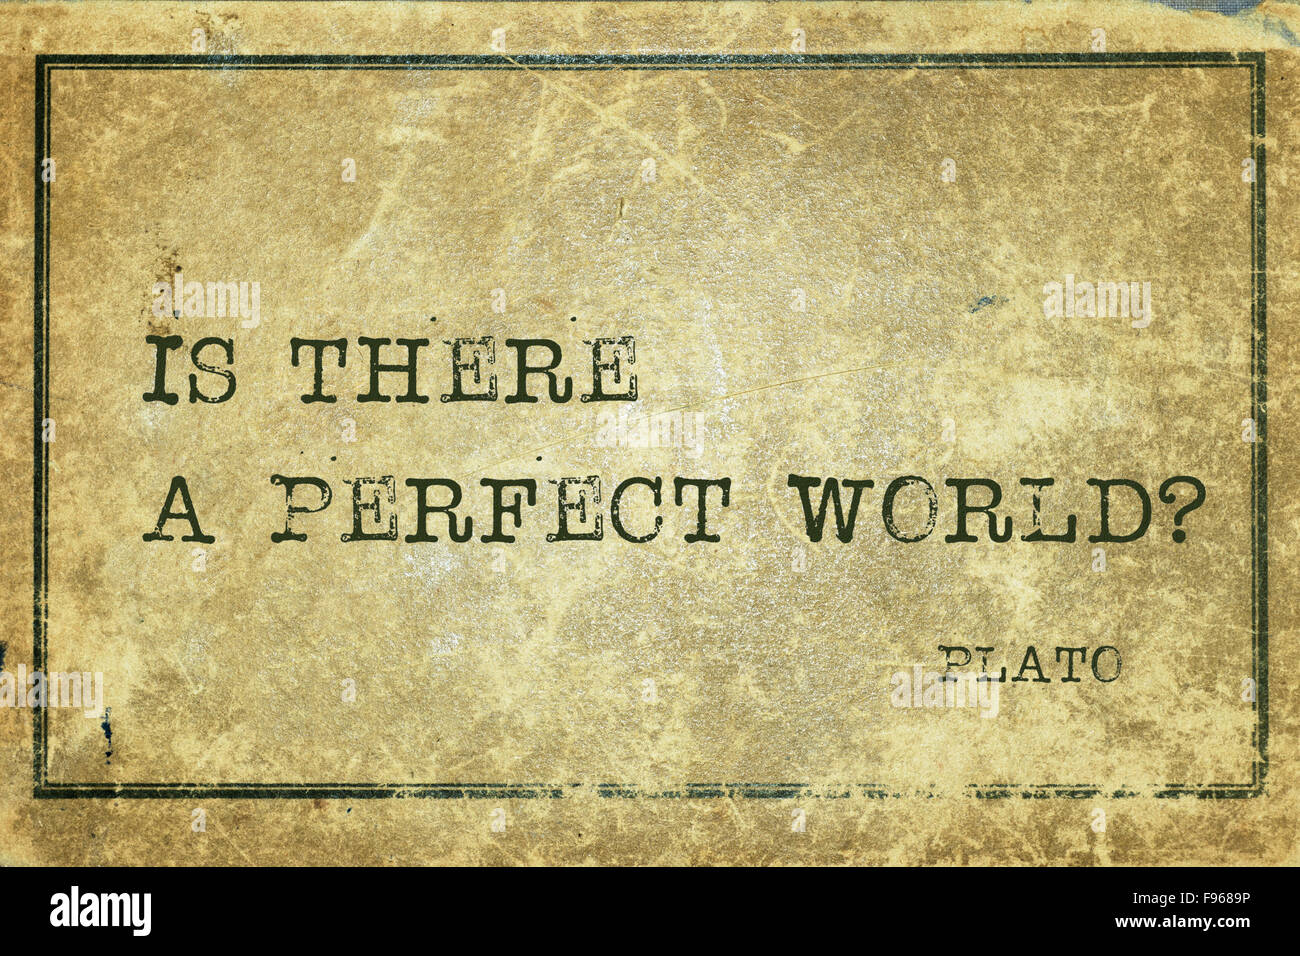 Gibt es eine perfekte Welt?-der griechische Philosoph Plato Zitat auf Grunge Vintage Karton gedruckt Stockfoto